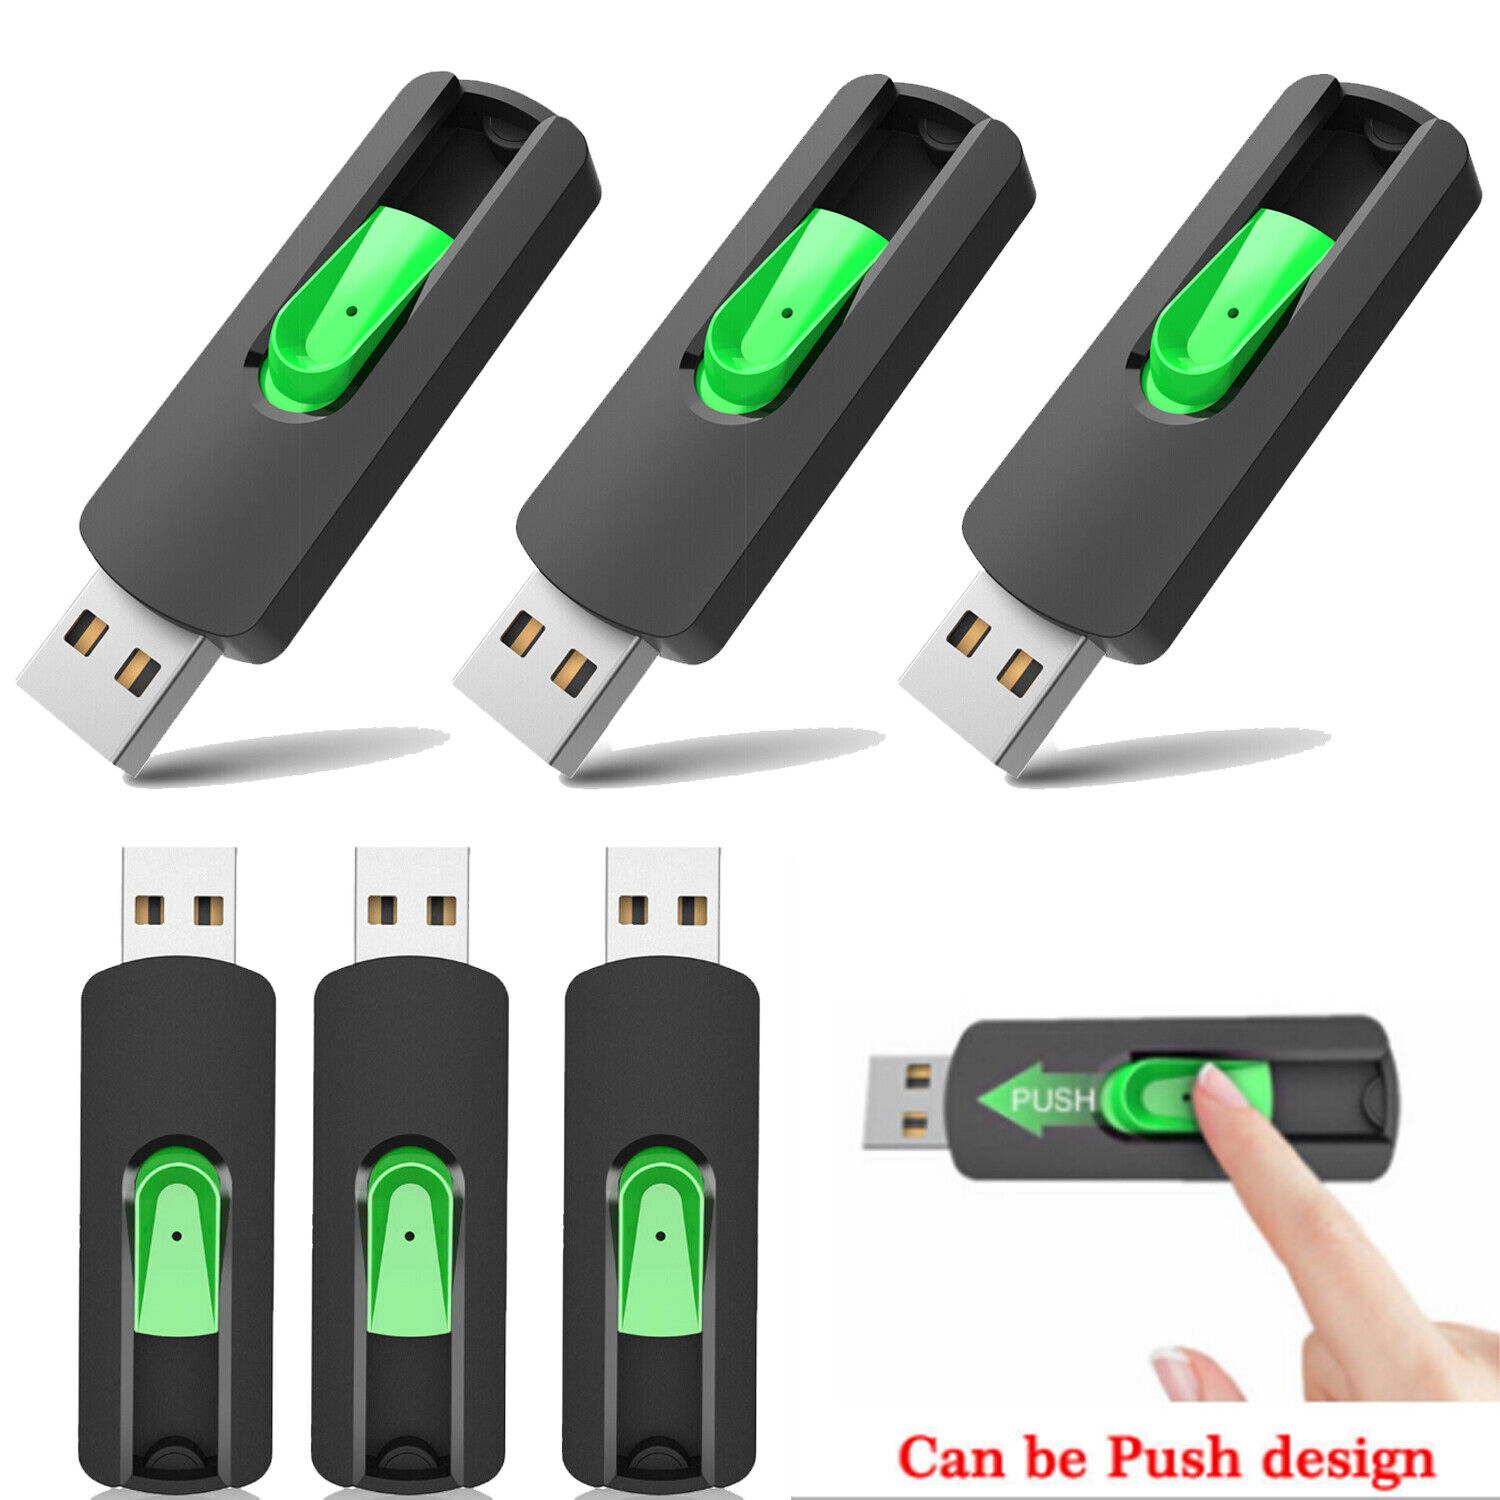 1-50 LOT 64GB Memory Stick Storage USB 2.0 Flash Drive Thumb Pen Drives U Disks